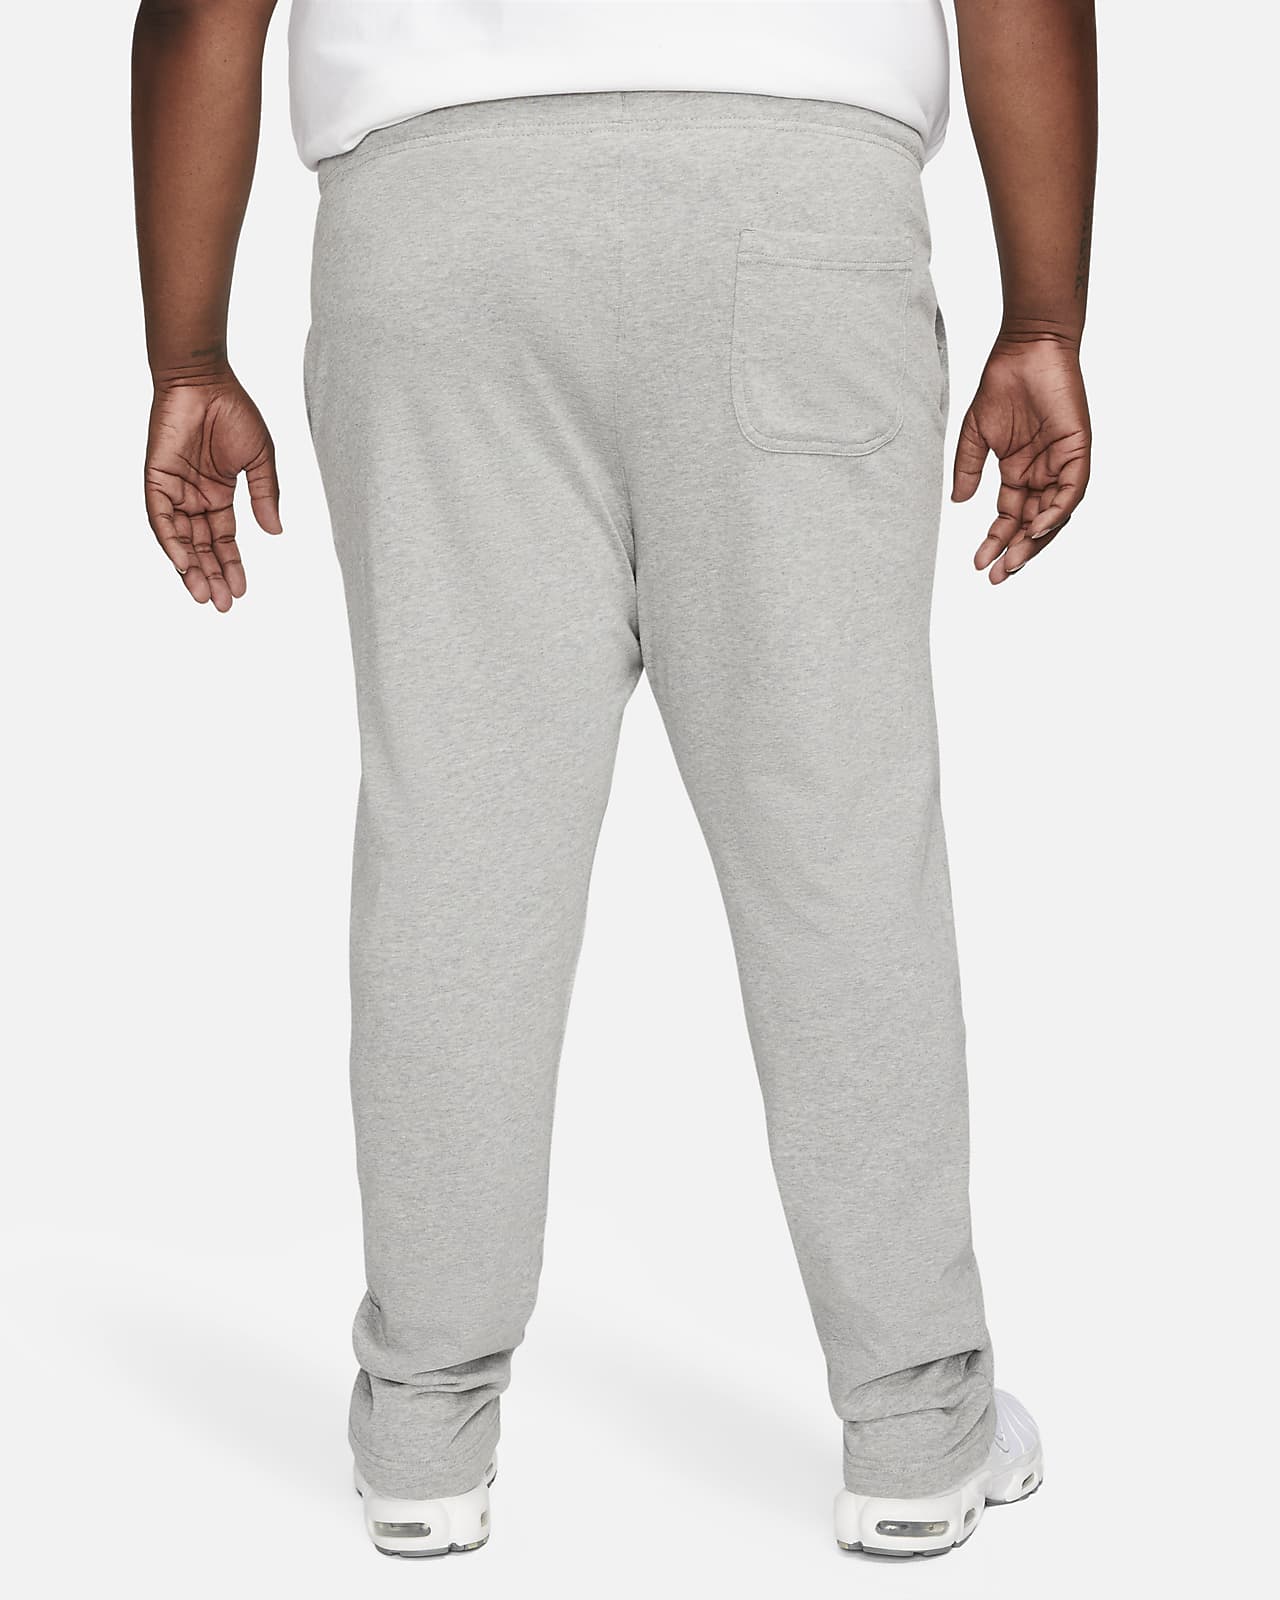 New Nike Sportswear Club Fleece Cuffed Pants BV2737-410 Midnight Navy S-Tall